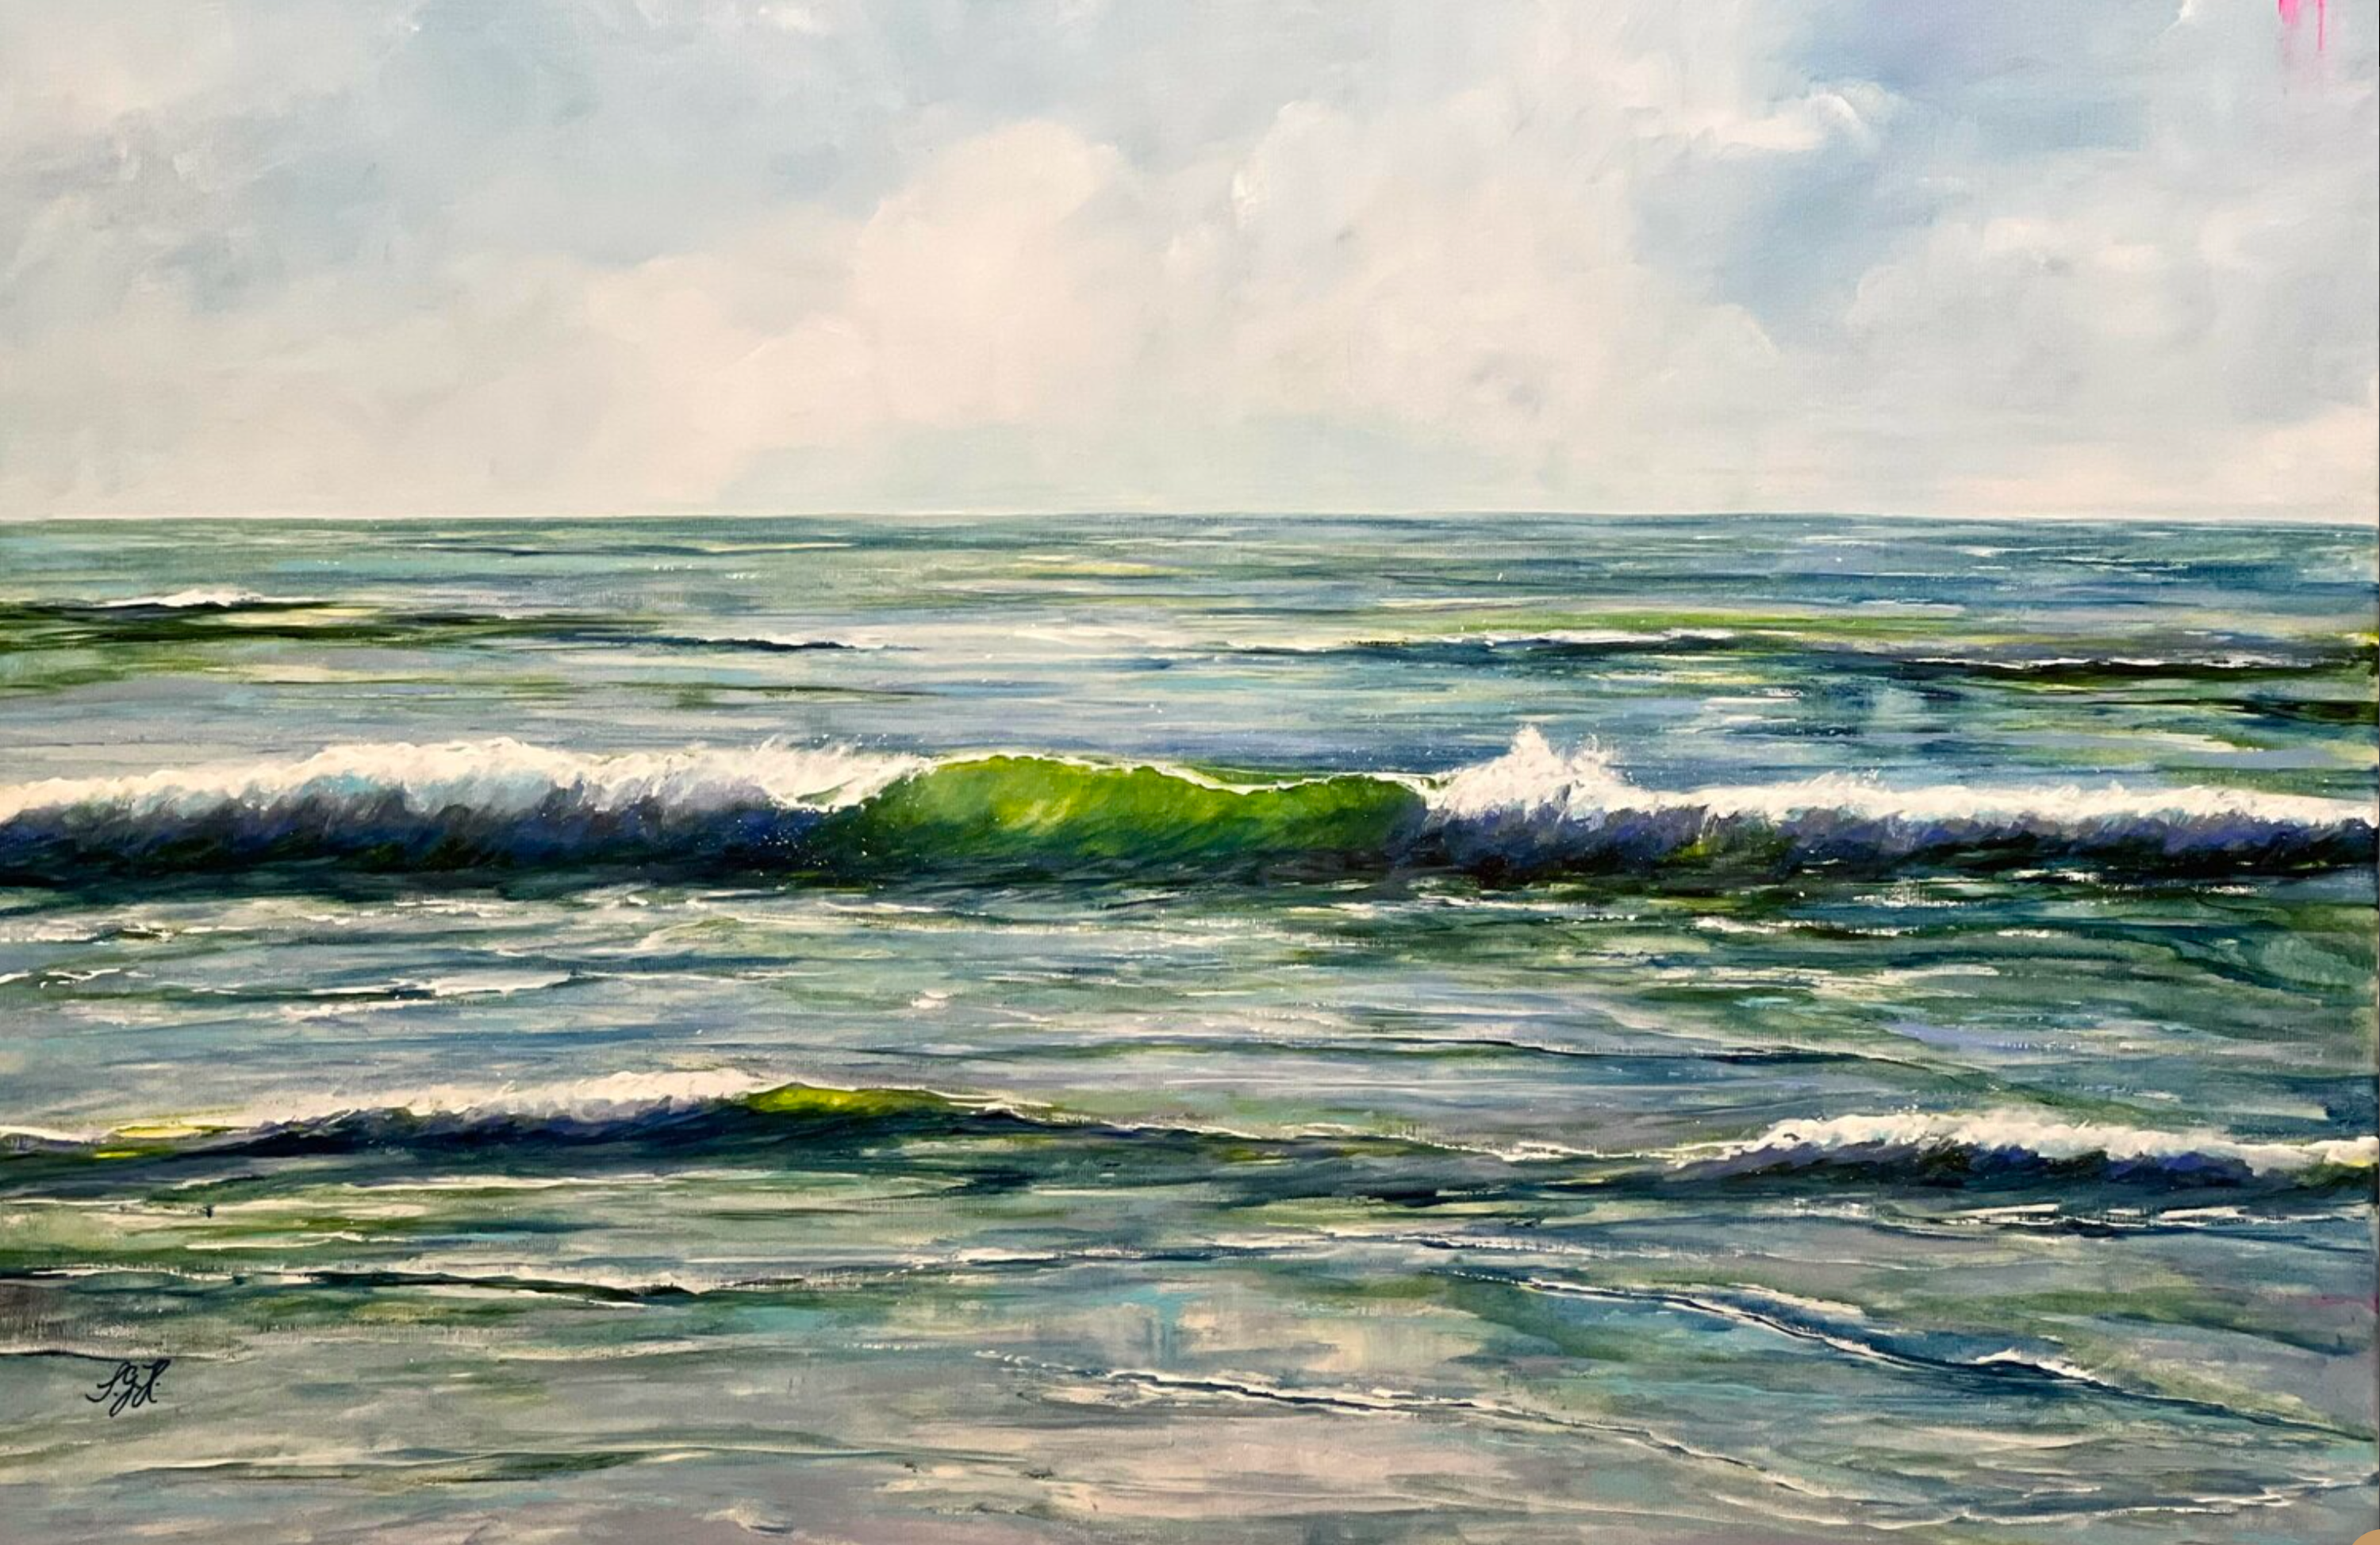 Il dipinto "Green Wave 2" di Sandra Gebhardt-Hoepfner. Il sole splende alto nel cielo, facendo apparire le onde che si infrangono nel bellissimo mare di un verde traslucido. È una giornata meravigliosa, in mezzo alla natura. Felicità. I colori sono verde chiaro, verde scuro, blu scuro, grigio-blu, grigio scuro e bianco.